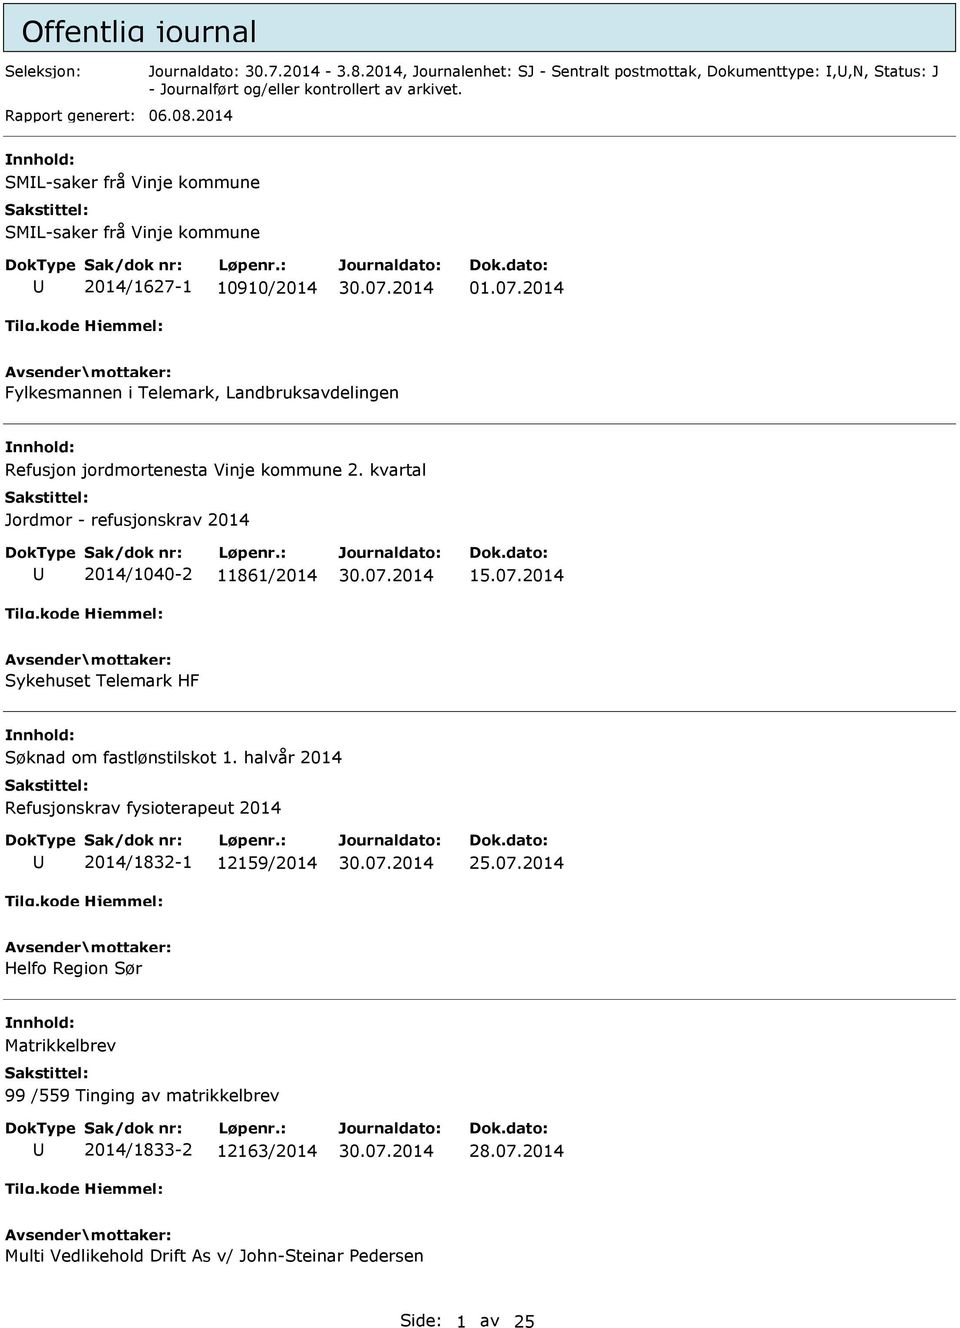 2014 Fylkesmannen i Telemark, Landbruksavdelingen Refusjon jordmortenesta Vinje kommune 2. kvartal Jordmor - refusjonskrav 2014 2014/1040-2 11861/2014 15.07.